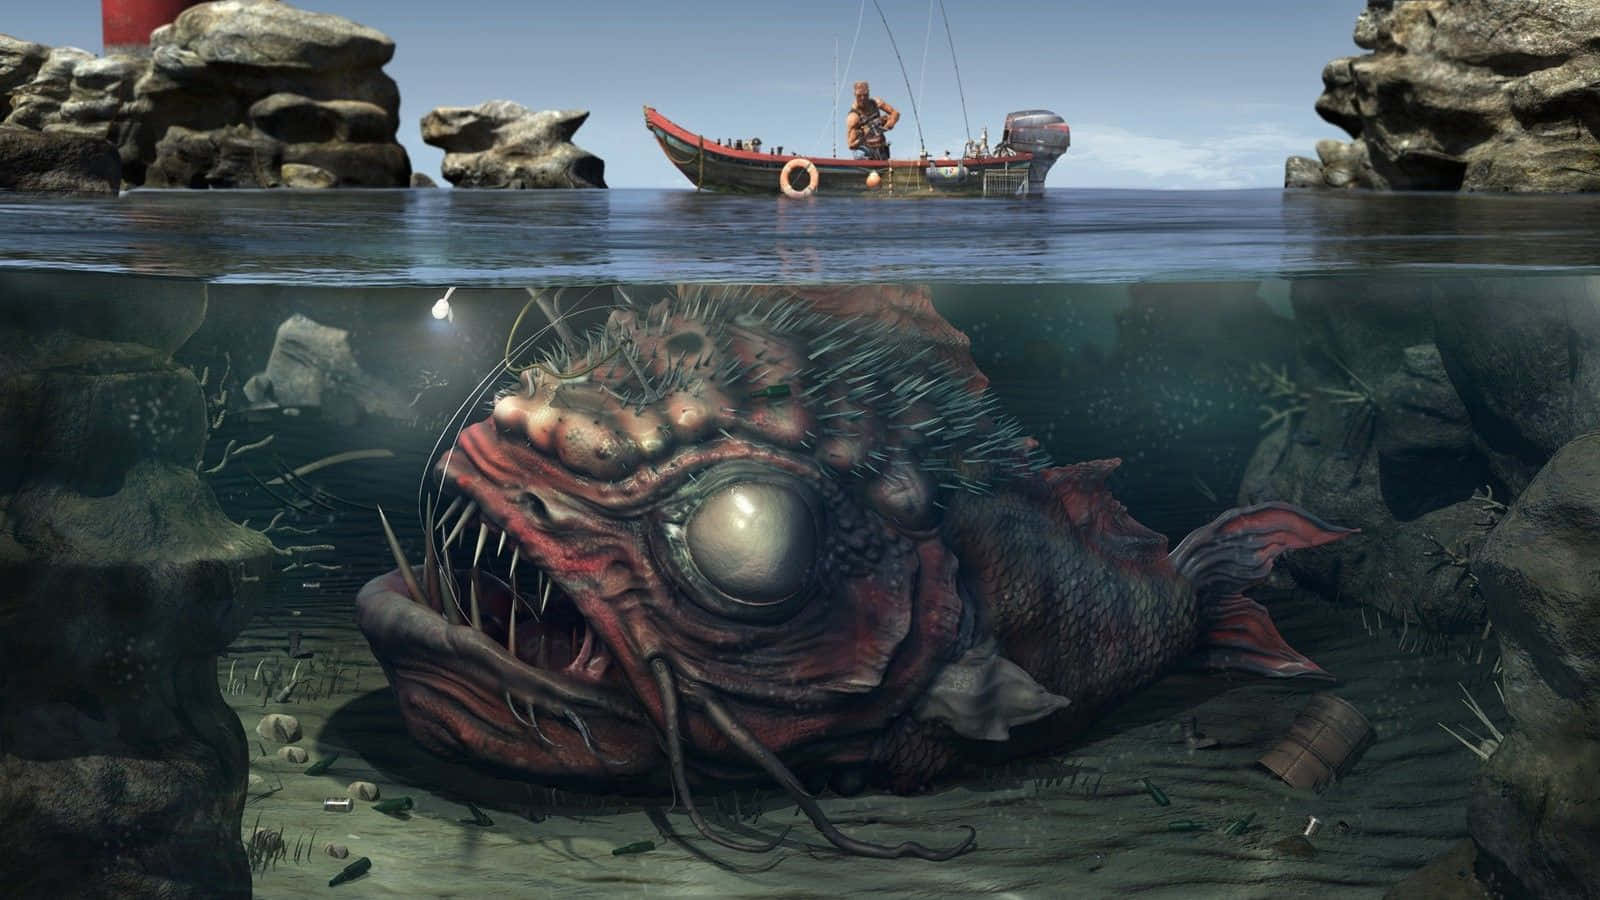 Anglerfiskunder Båten Skrämmande Hav [bild]